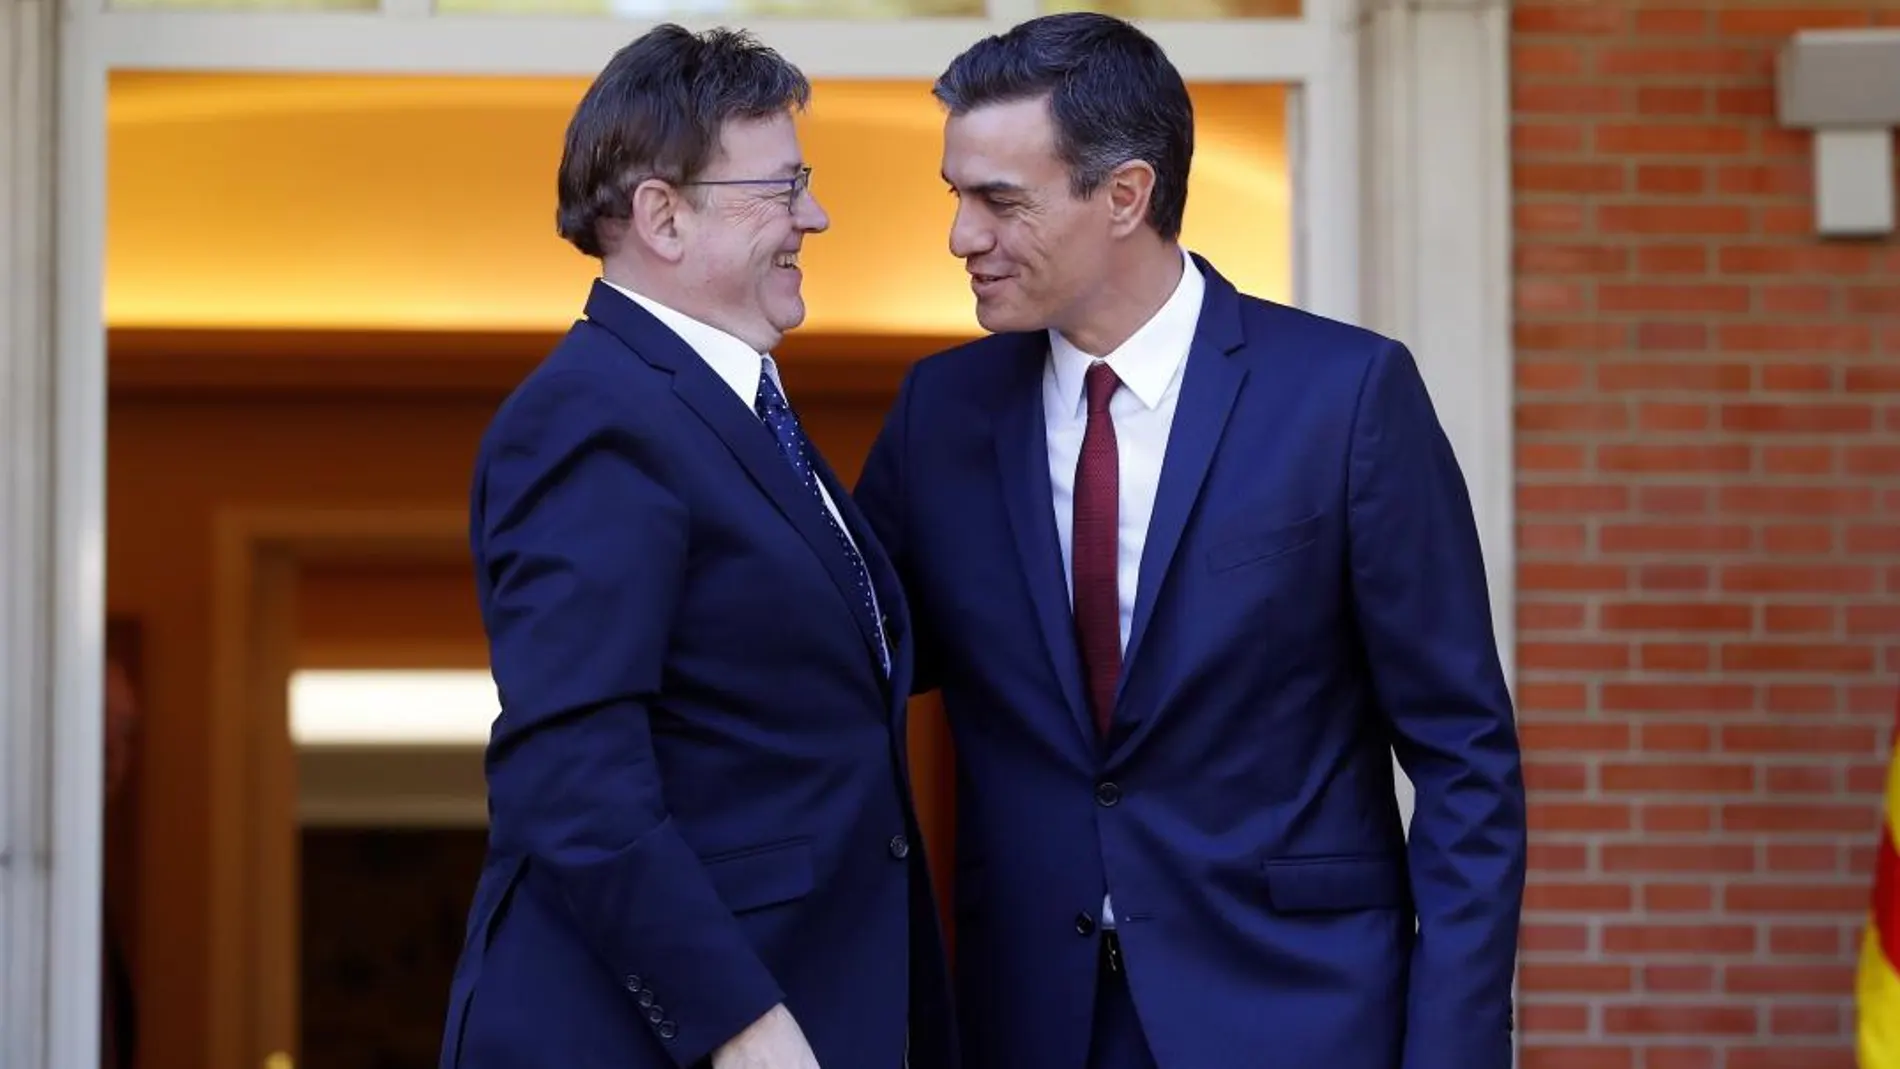 El presidente de la Generalitat valenciana, Ximo Puig, se reunió ayer en La Moncloa con el presidente del Gobierno, Pedro Sánchez, para abordar asuntos relativos a financiación, deuda e inversiones